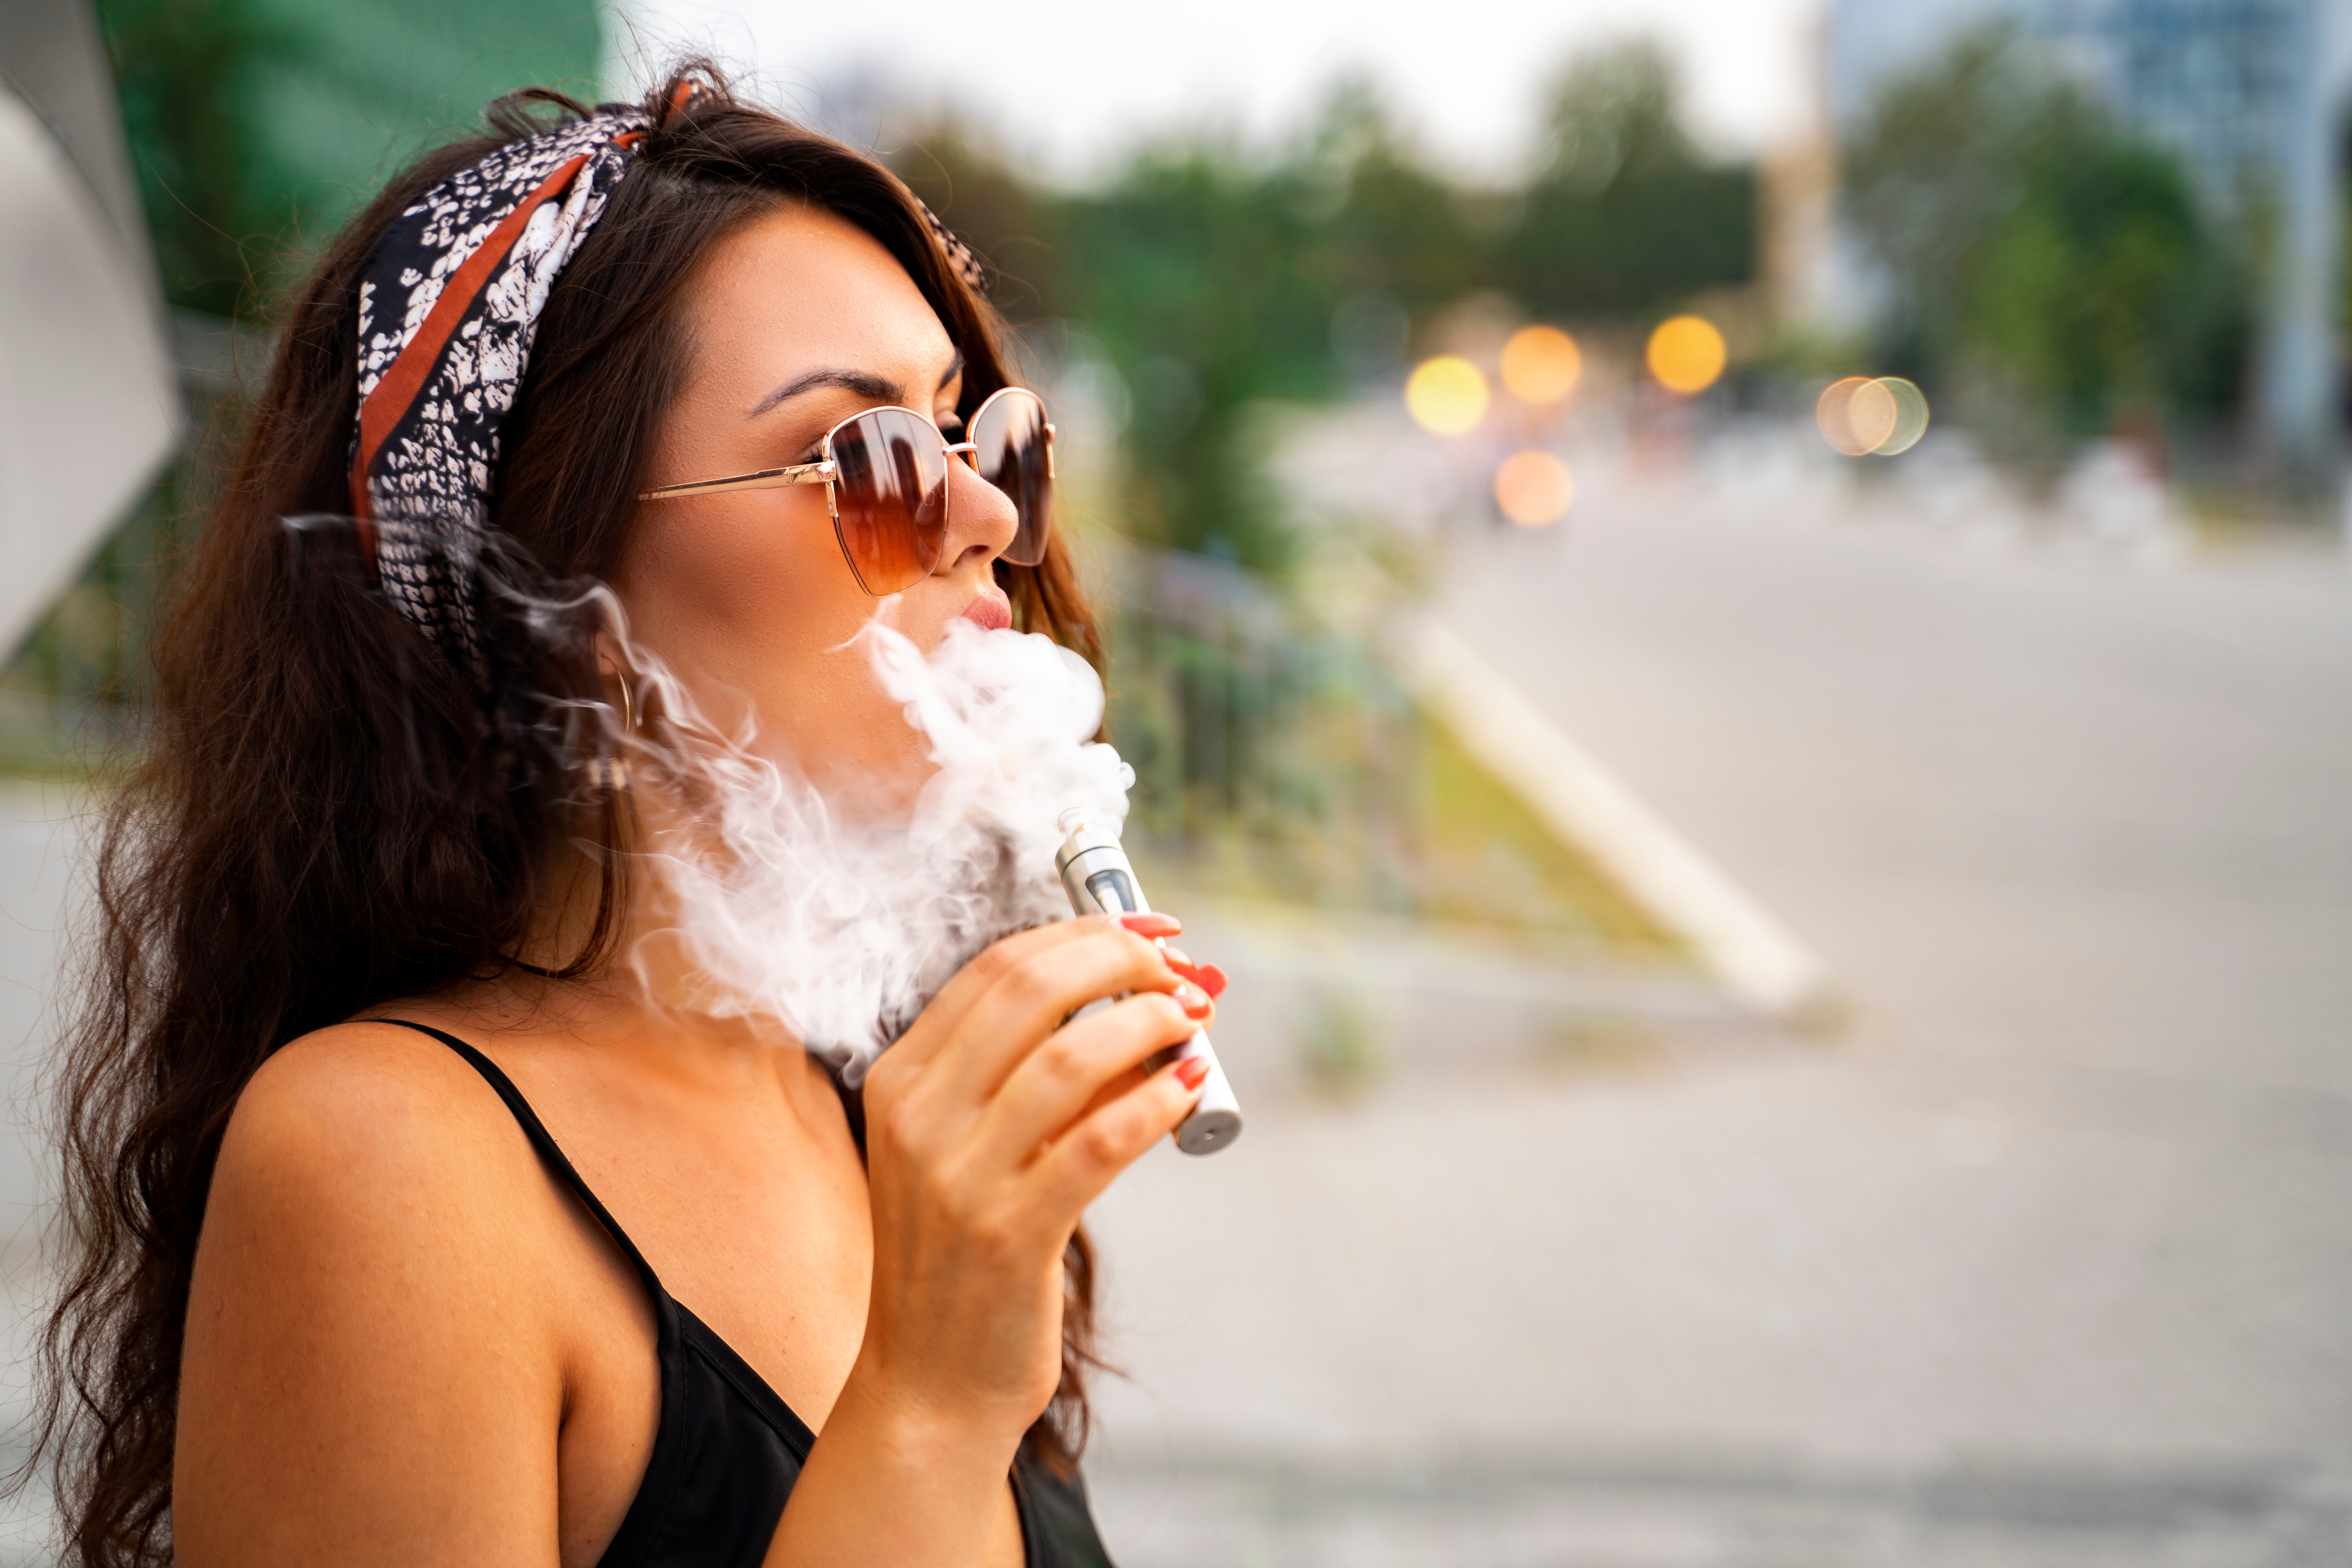 Une utilisation de la e-cigarette chez les jeunes à la hausse, une reprise importante depuis l’accalmie de la pandémie, il s'agit de trouver de nouveaux moyens pour prévenir le vapotage chez les adolescents (Visuel Adobe Stock 366100234) .